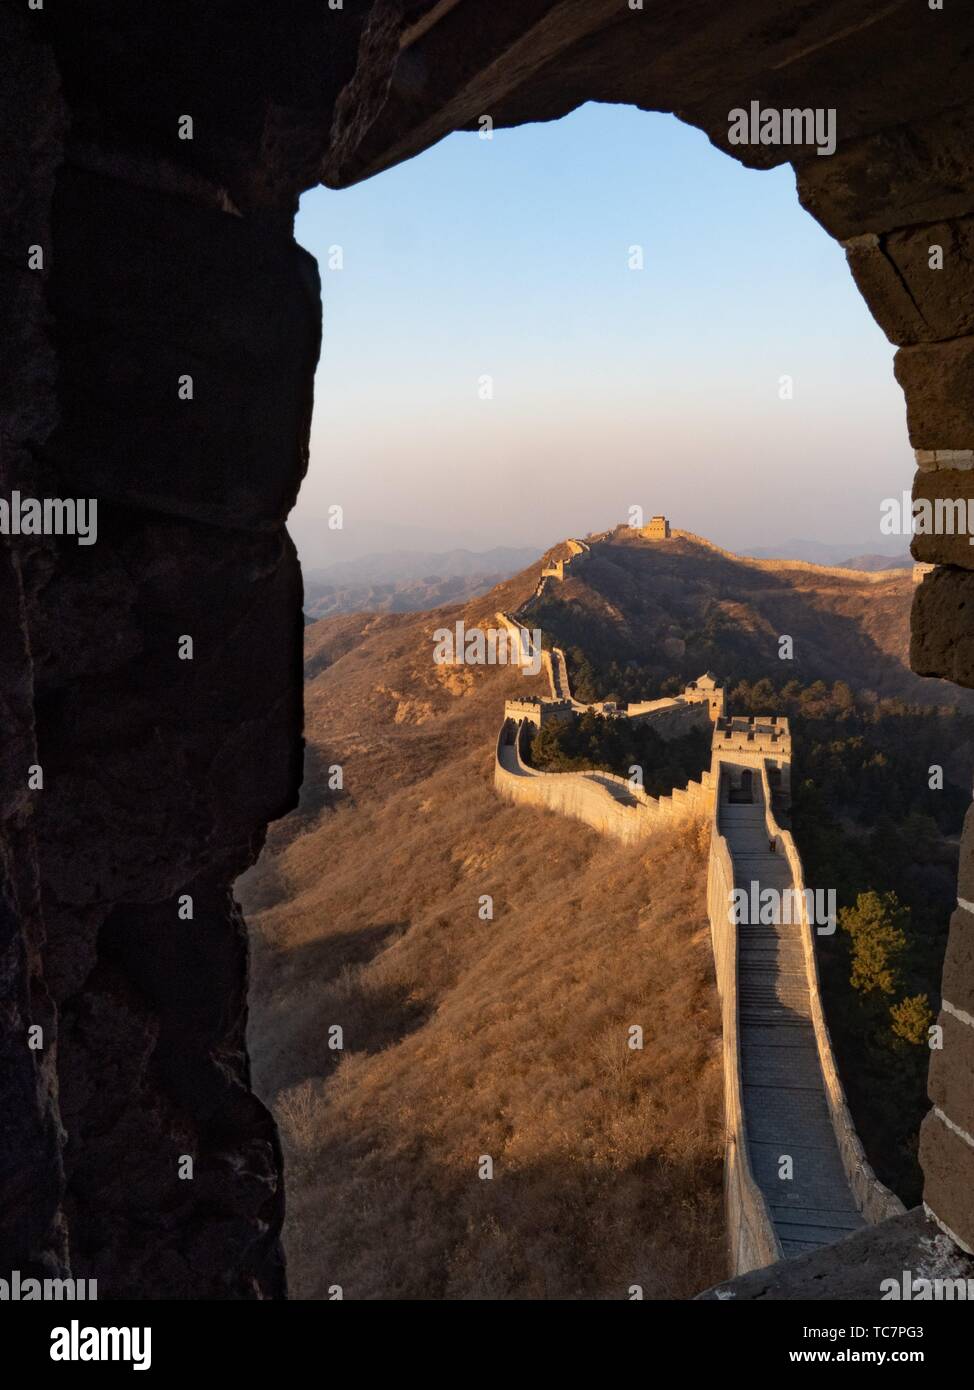 China Great Wall Jinshanling. Stock Photo